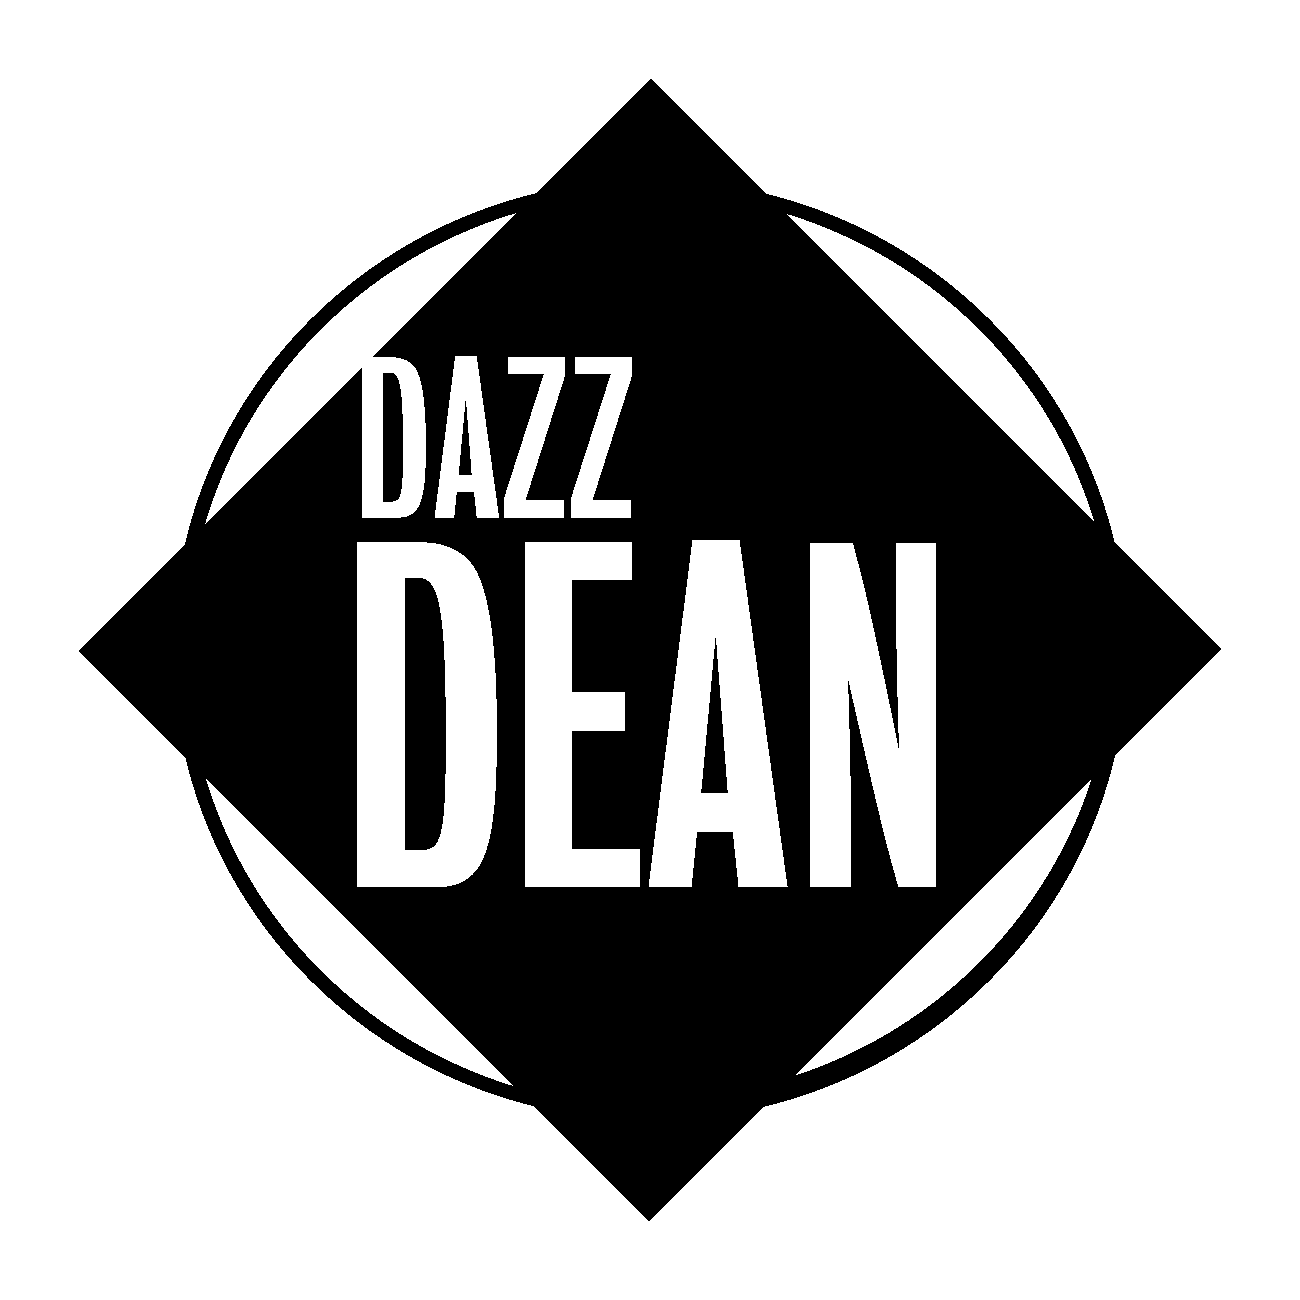 Dazz Dean